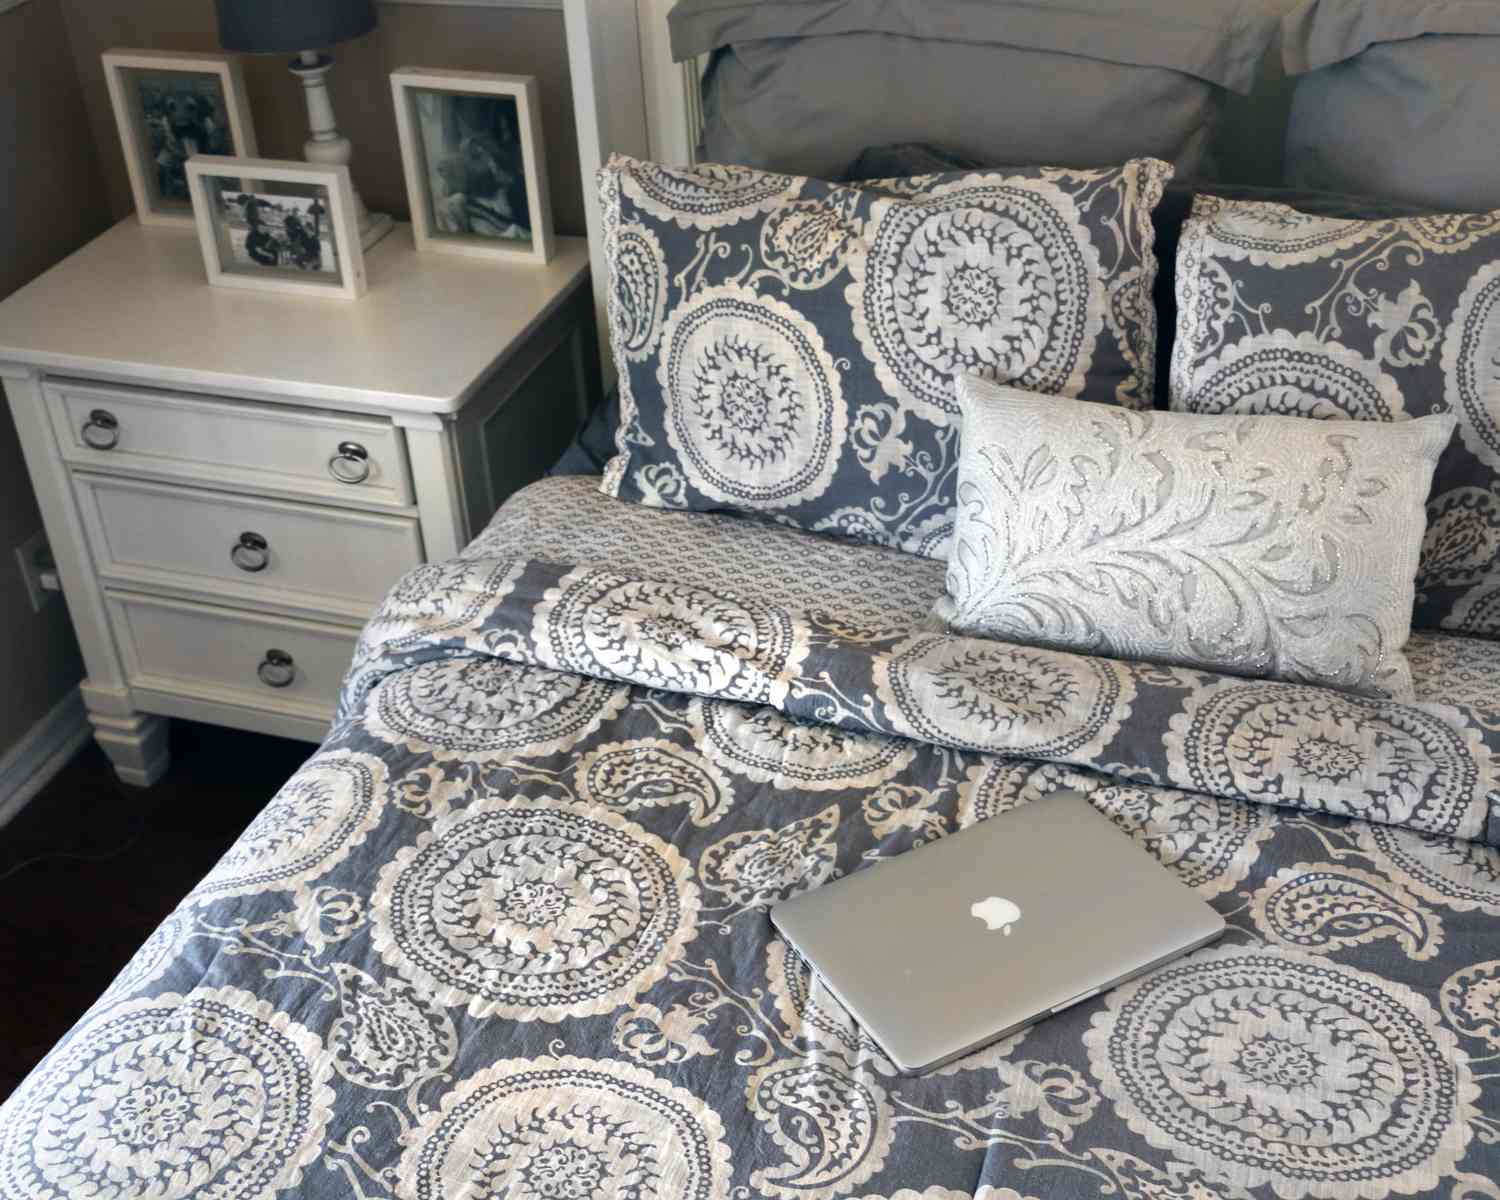 Novas estampas e padrões nos lençóis do quarto podem animar qualquer quarto principal